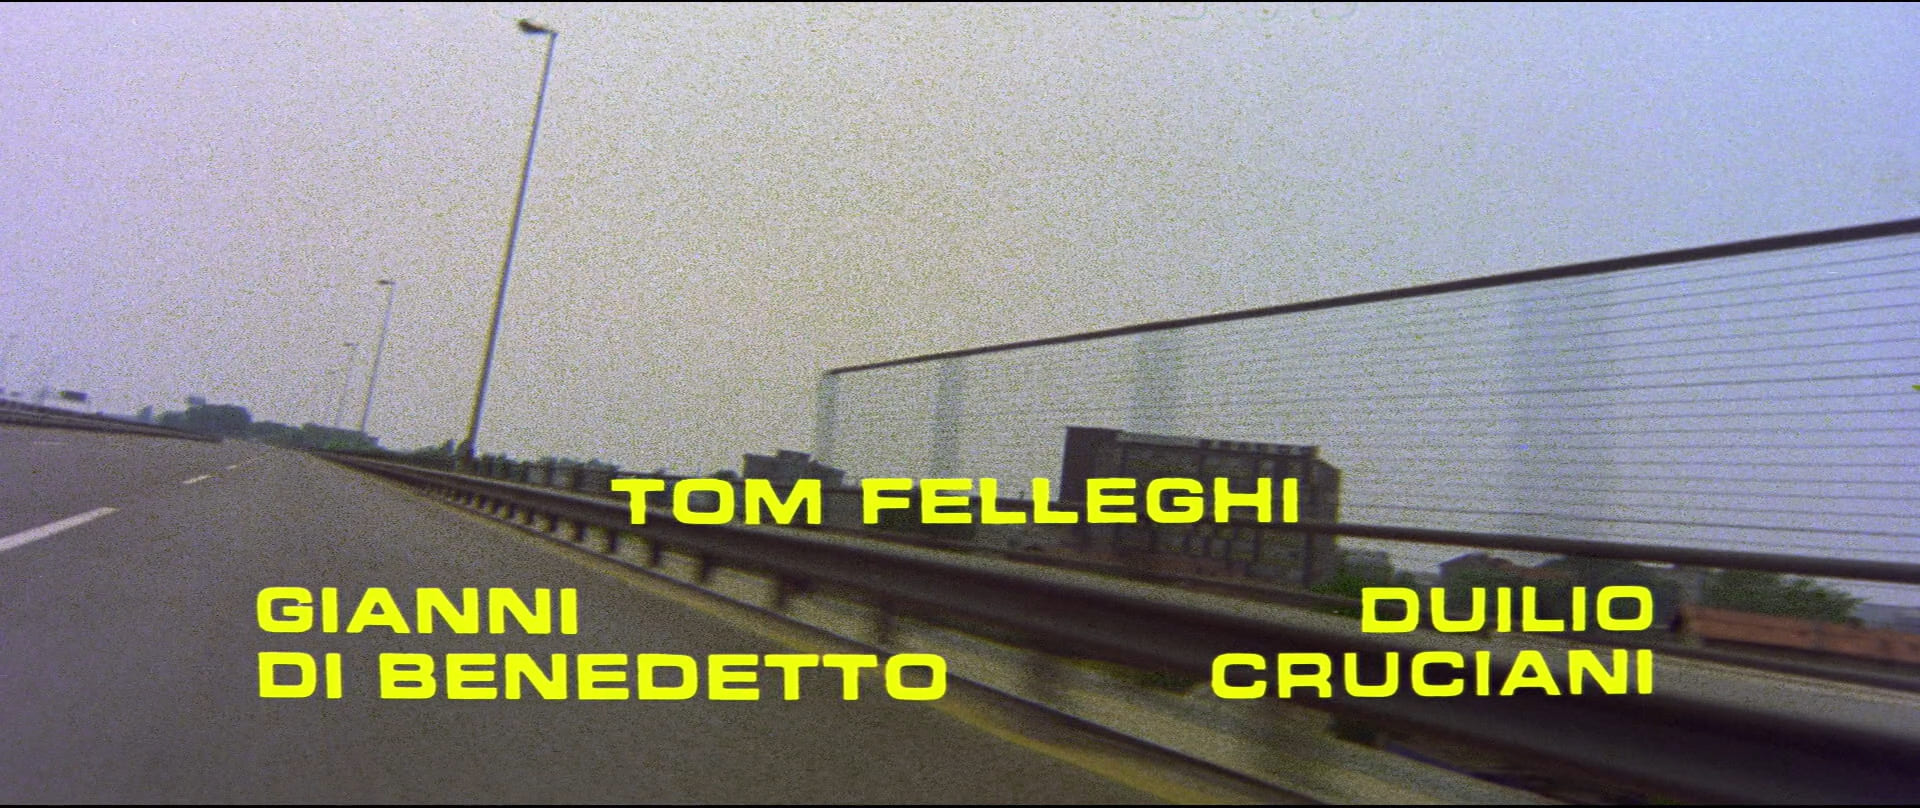 1975 _ Il Giustiziere Sfida La Città _ Comandante Ferrari _ Accreditato Come Tom Felleghi _ 04.jpg